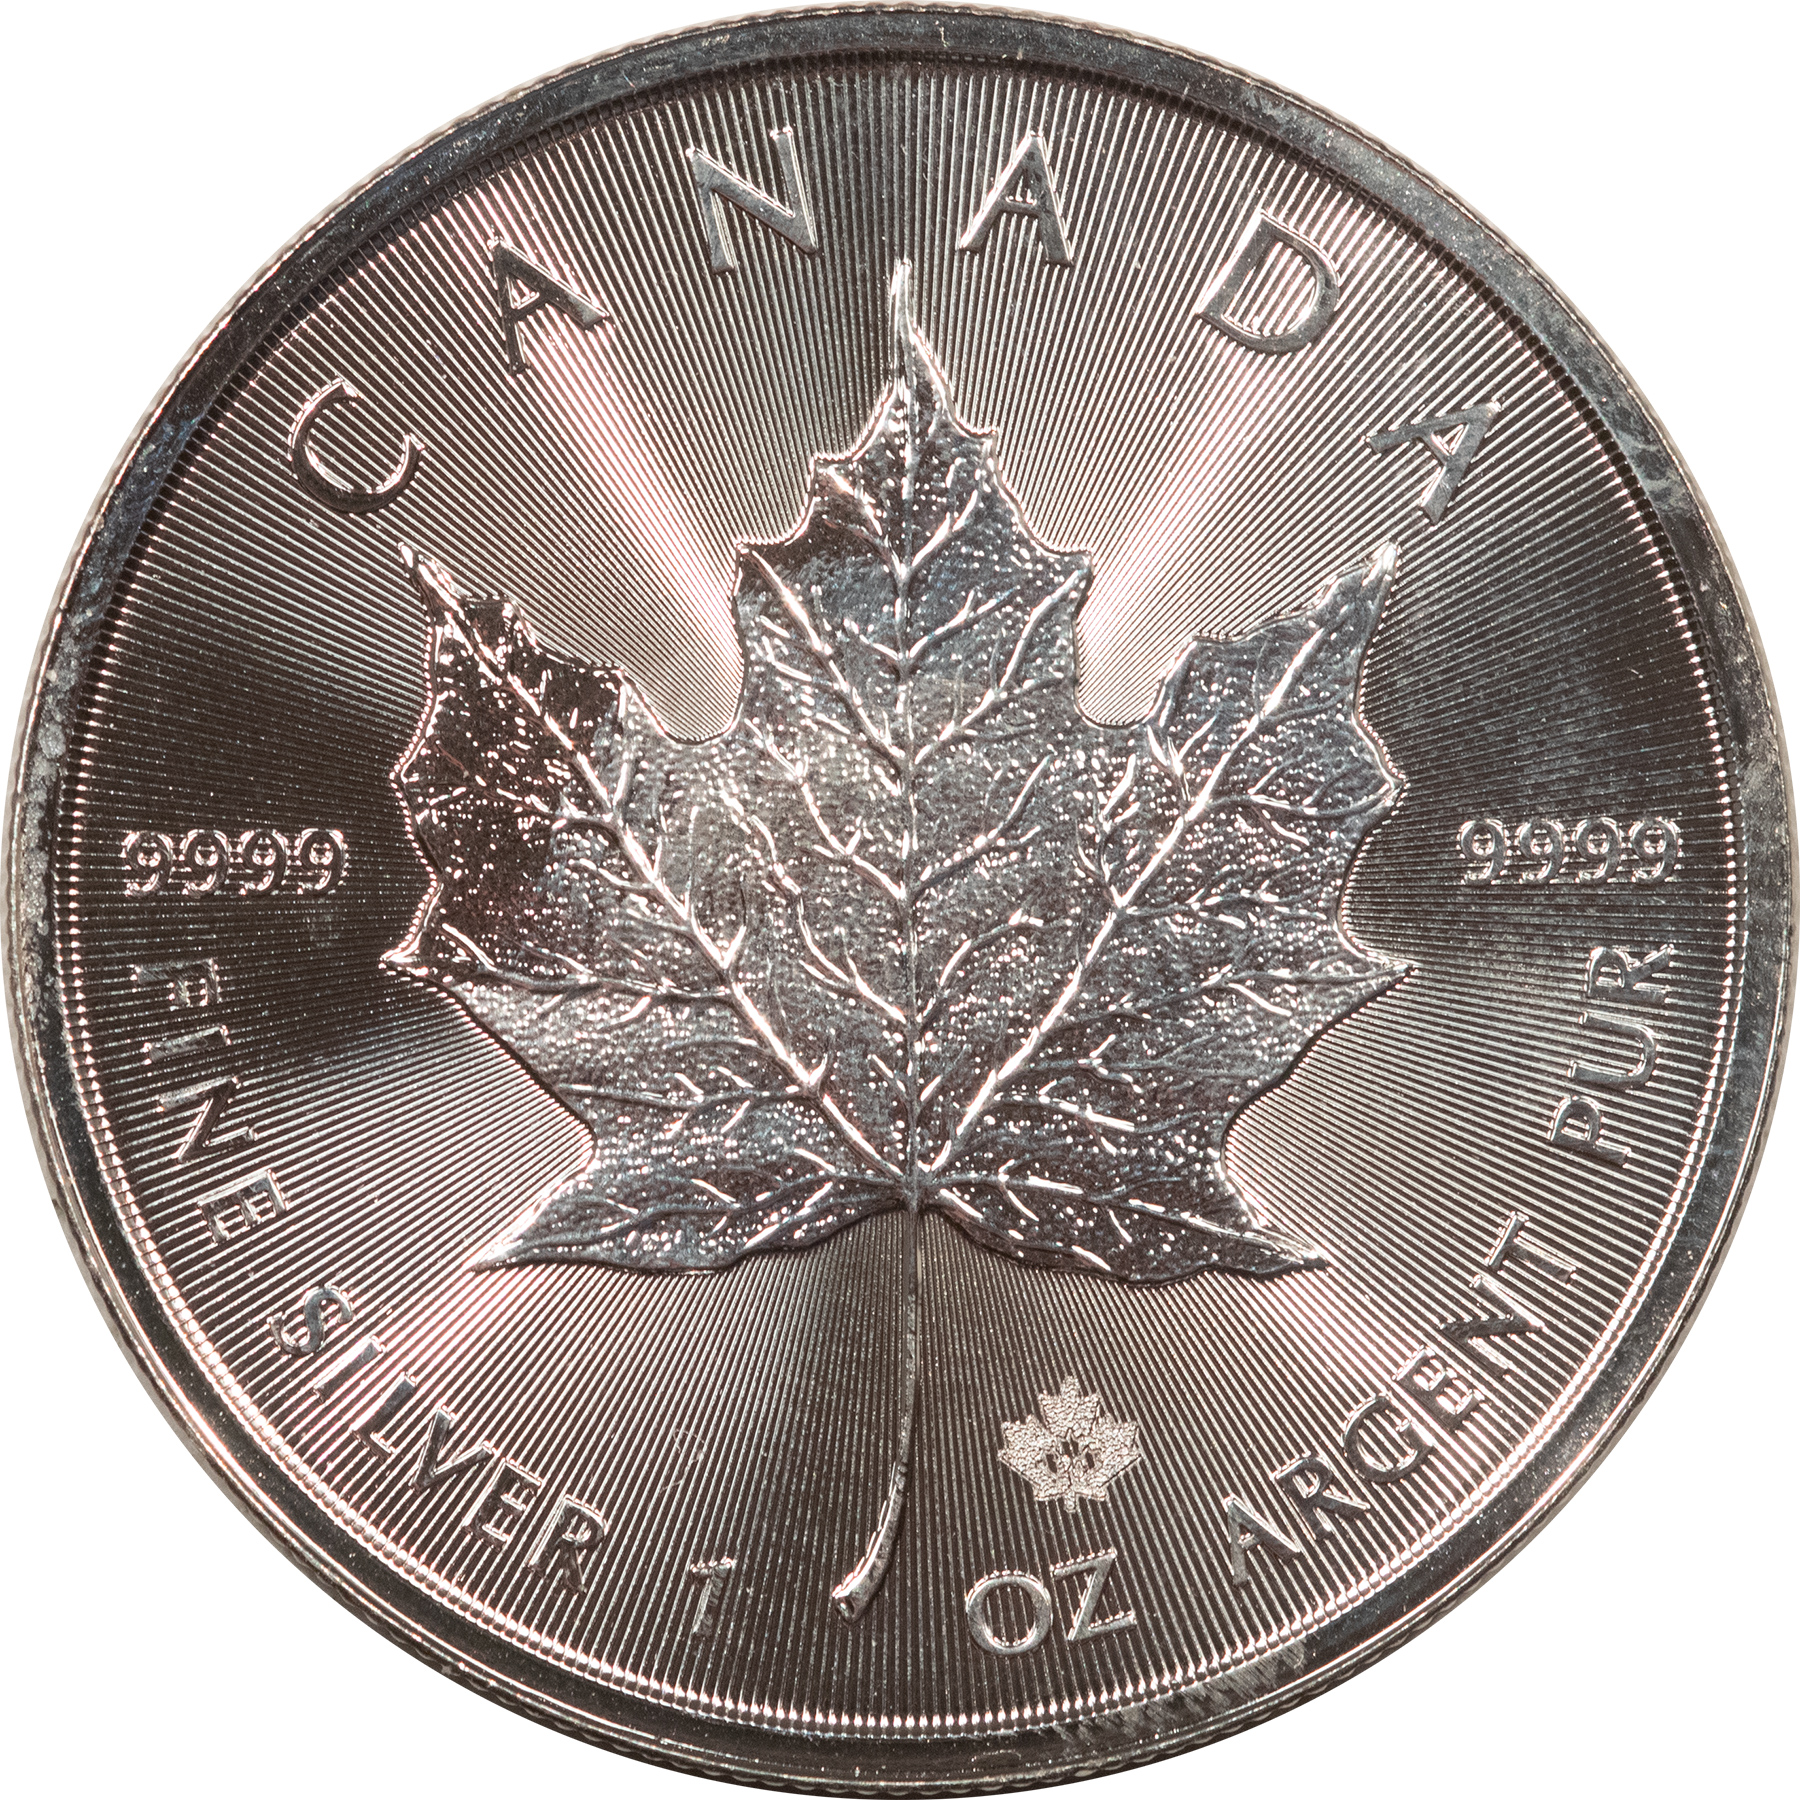 2020 CANADA $5 1OZ .9999 SILVER MAPLE LEAF 25 COIN ROLL, PRIVY GEM BU ...